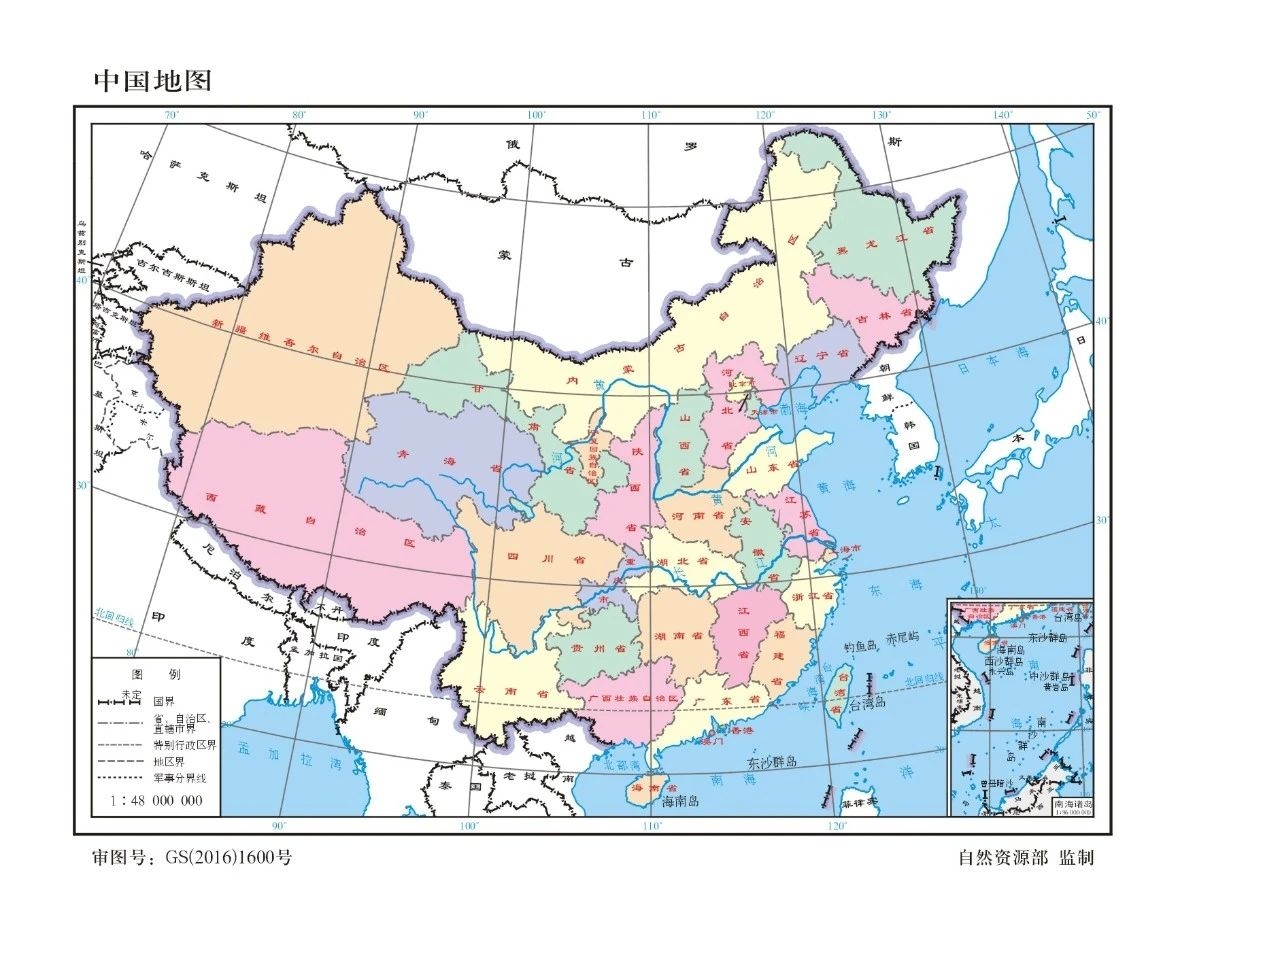 收藏！最新版标准中国地图发布109 / 作者:儿时的回忆 / 帖子ID:276238